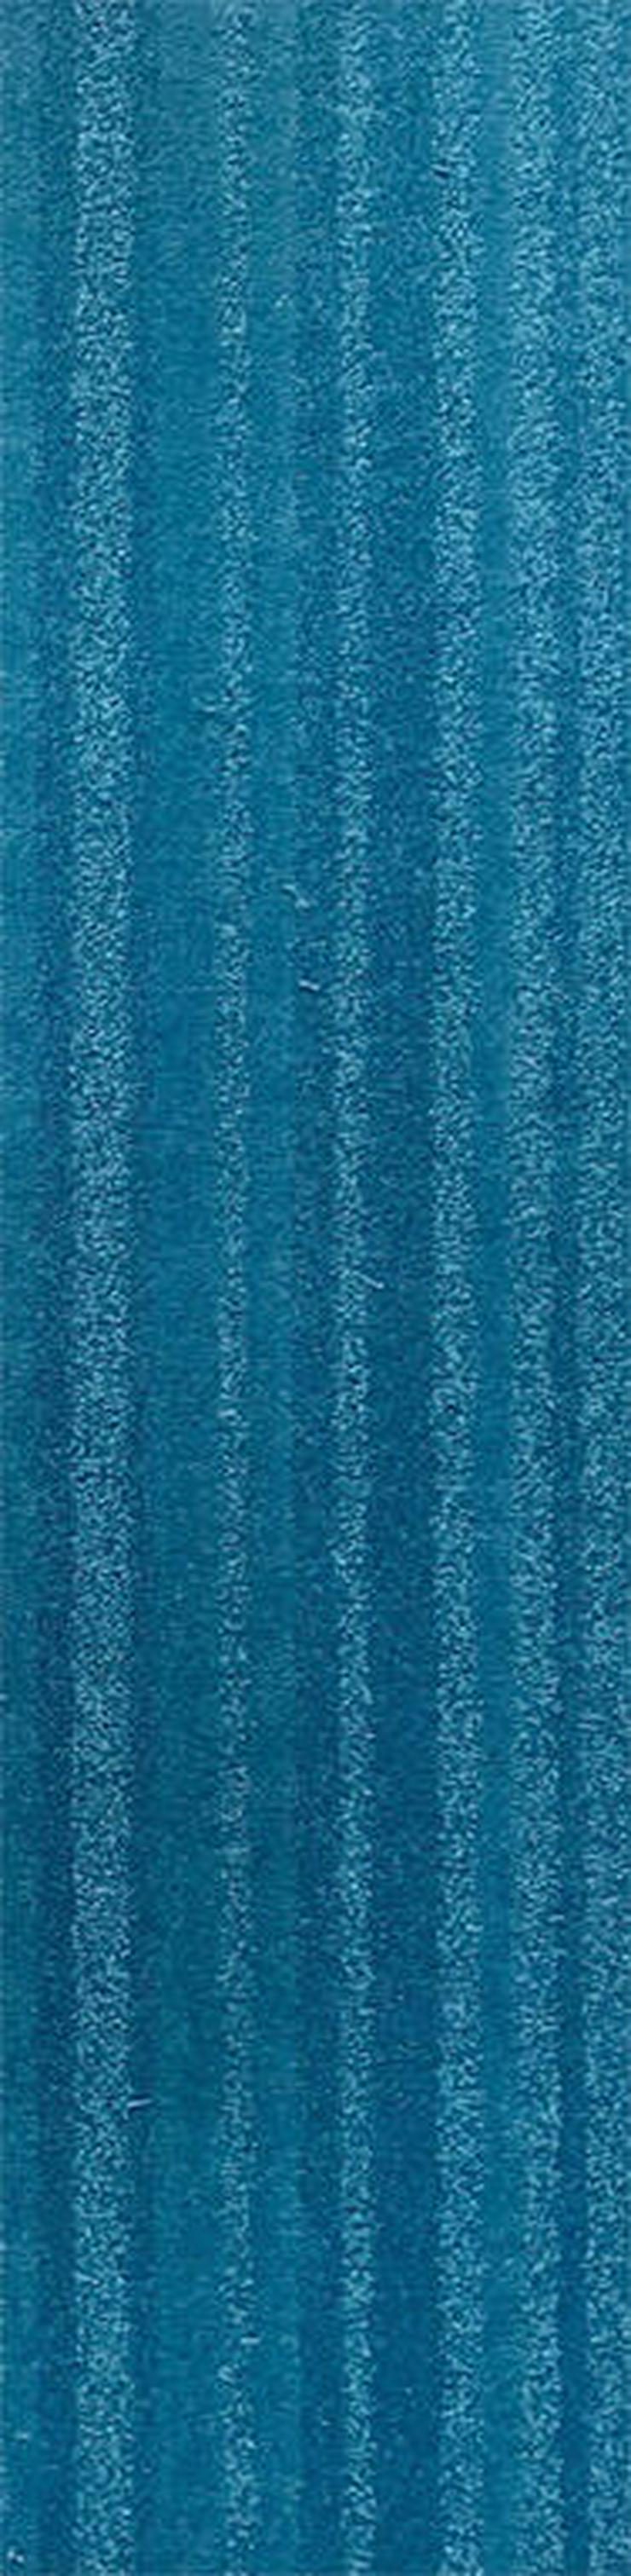 Bild 1: Günstige Menge blauer Teppichfliesen 25x100cm Neu